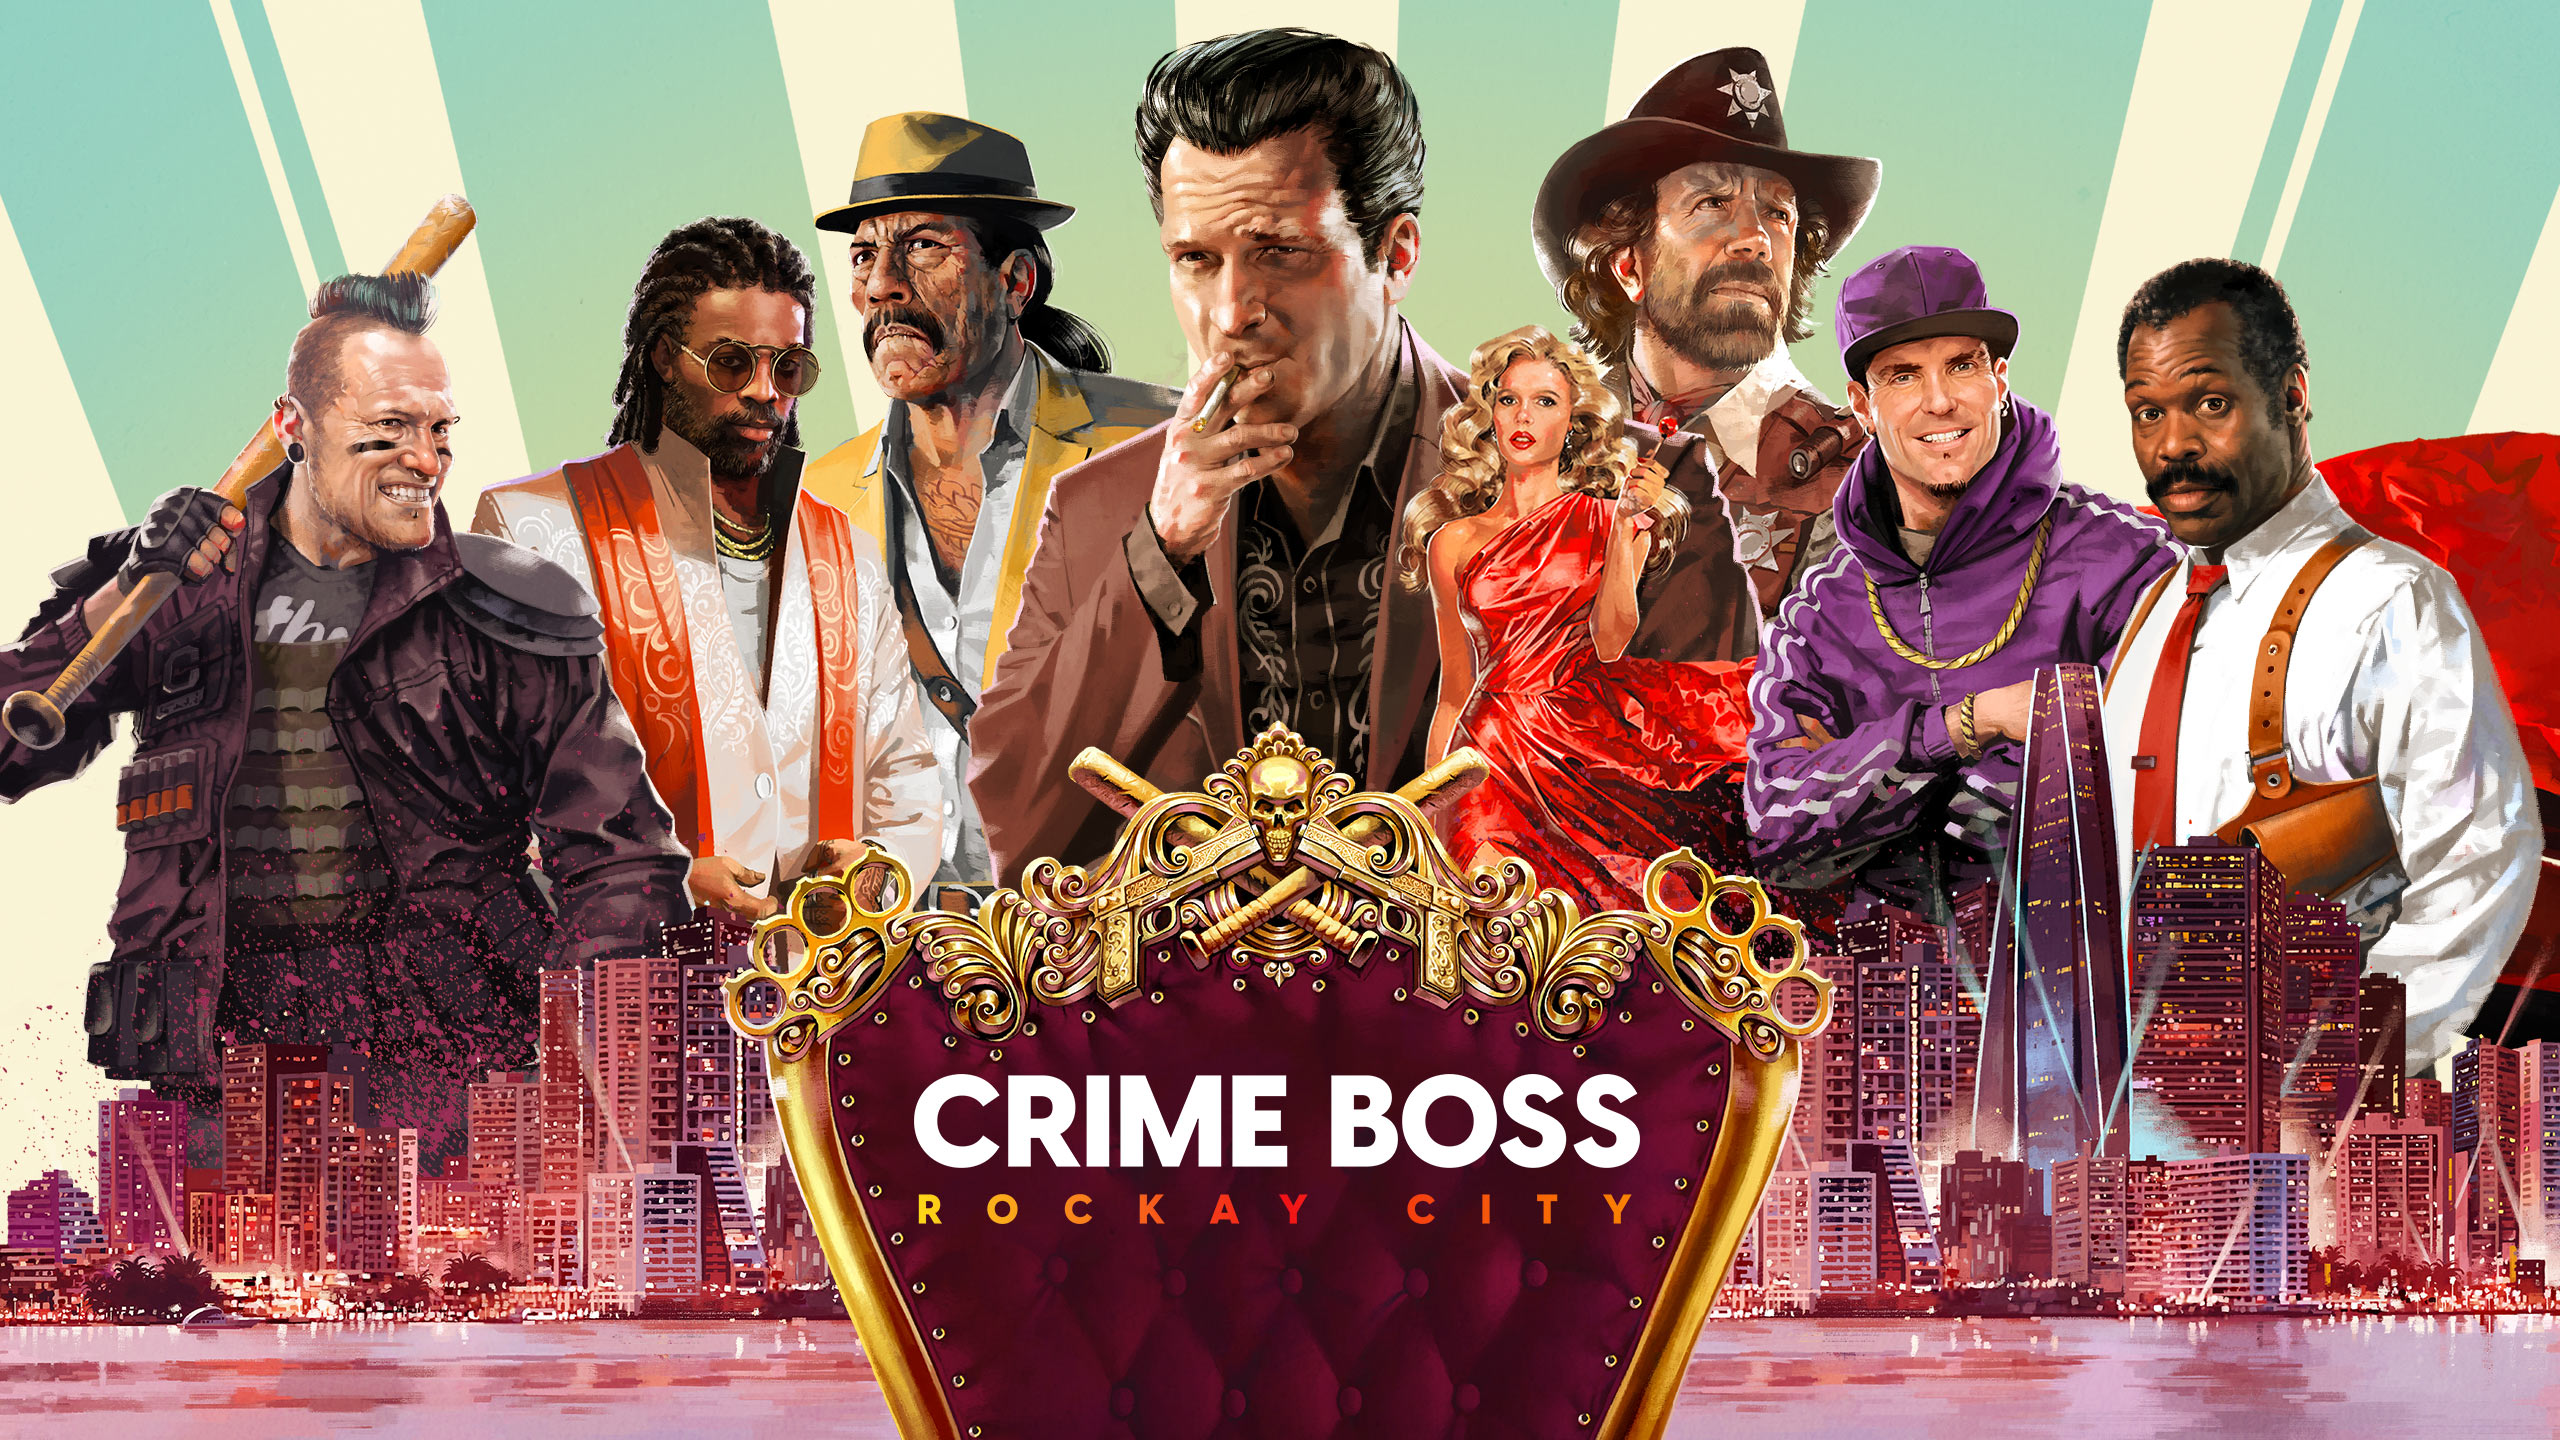 Nach Kingdom Hearts: Crime Boss: Rockay City wird am 18. Juni auf Steam veröffentlicht